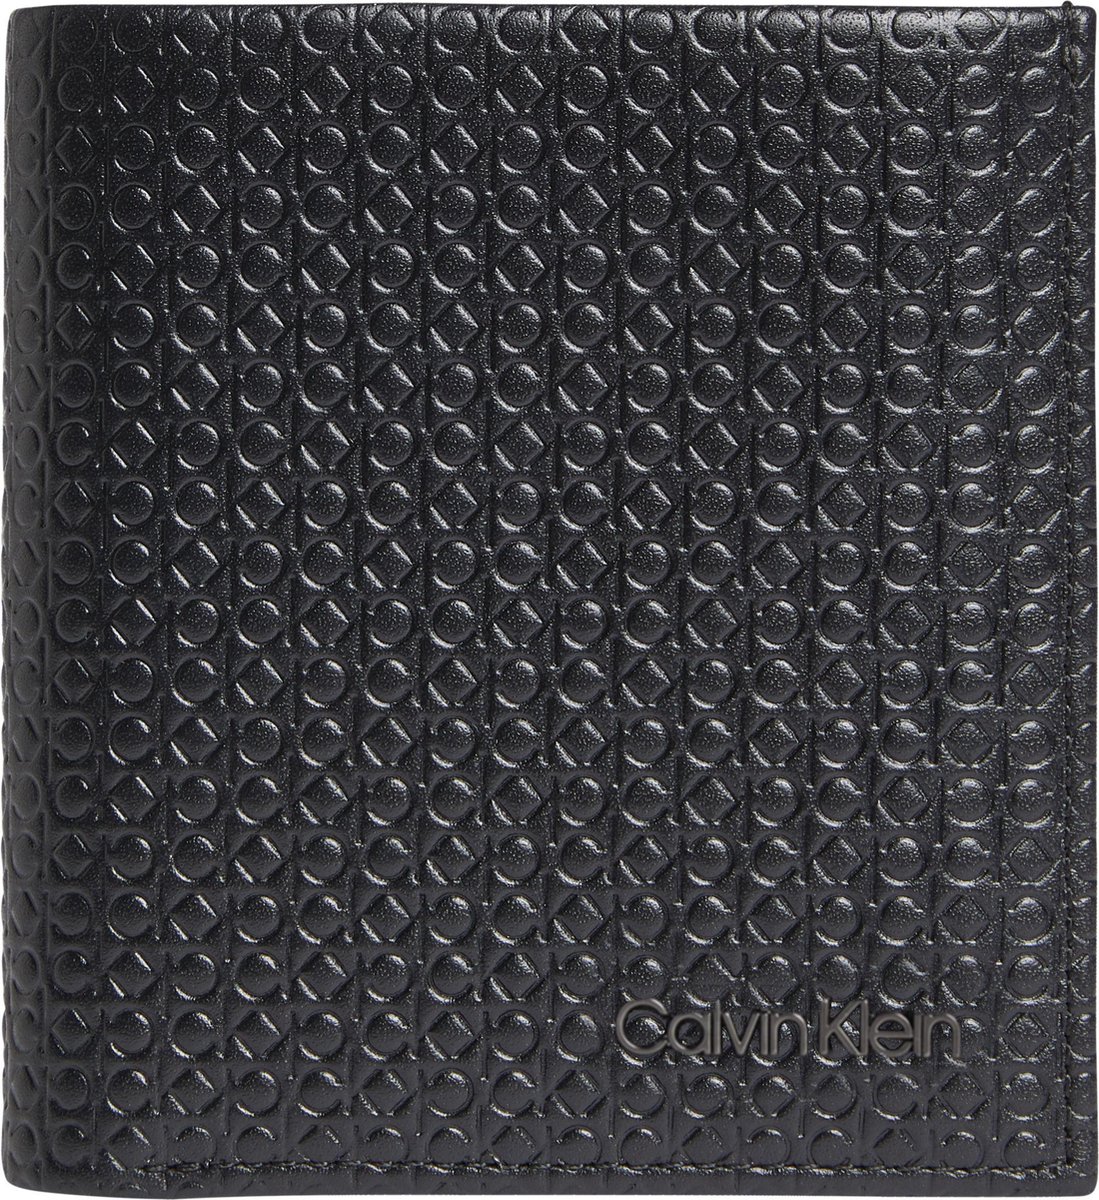 Calvin Klein - RFID - Warmth trifold 6cc w/coin - heren portemonnee - black nano